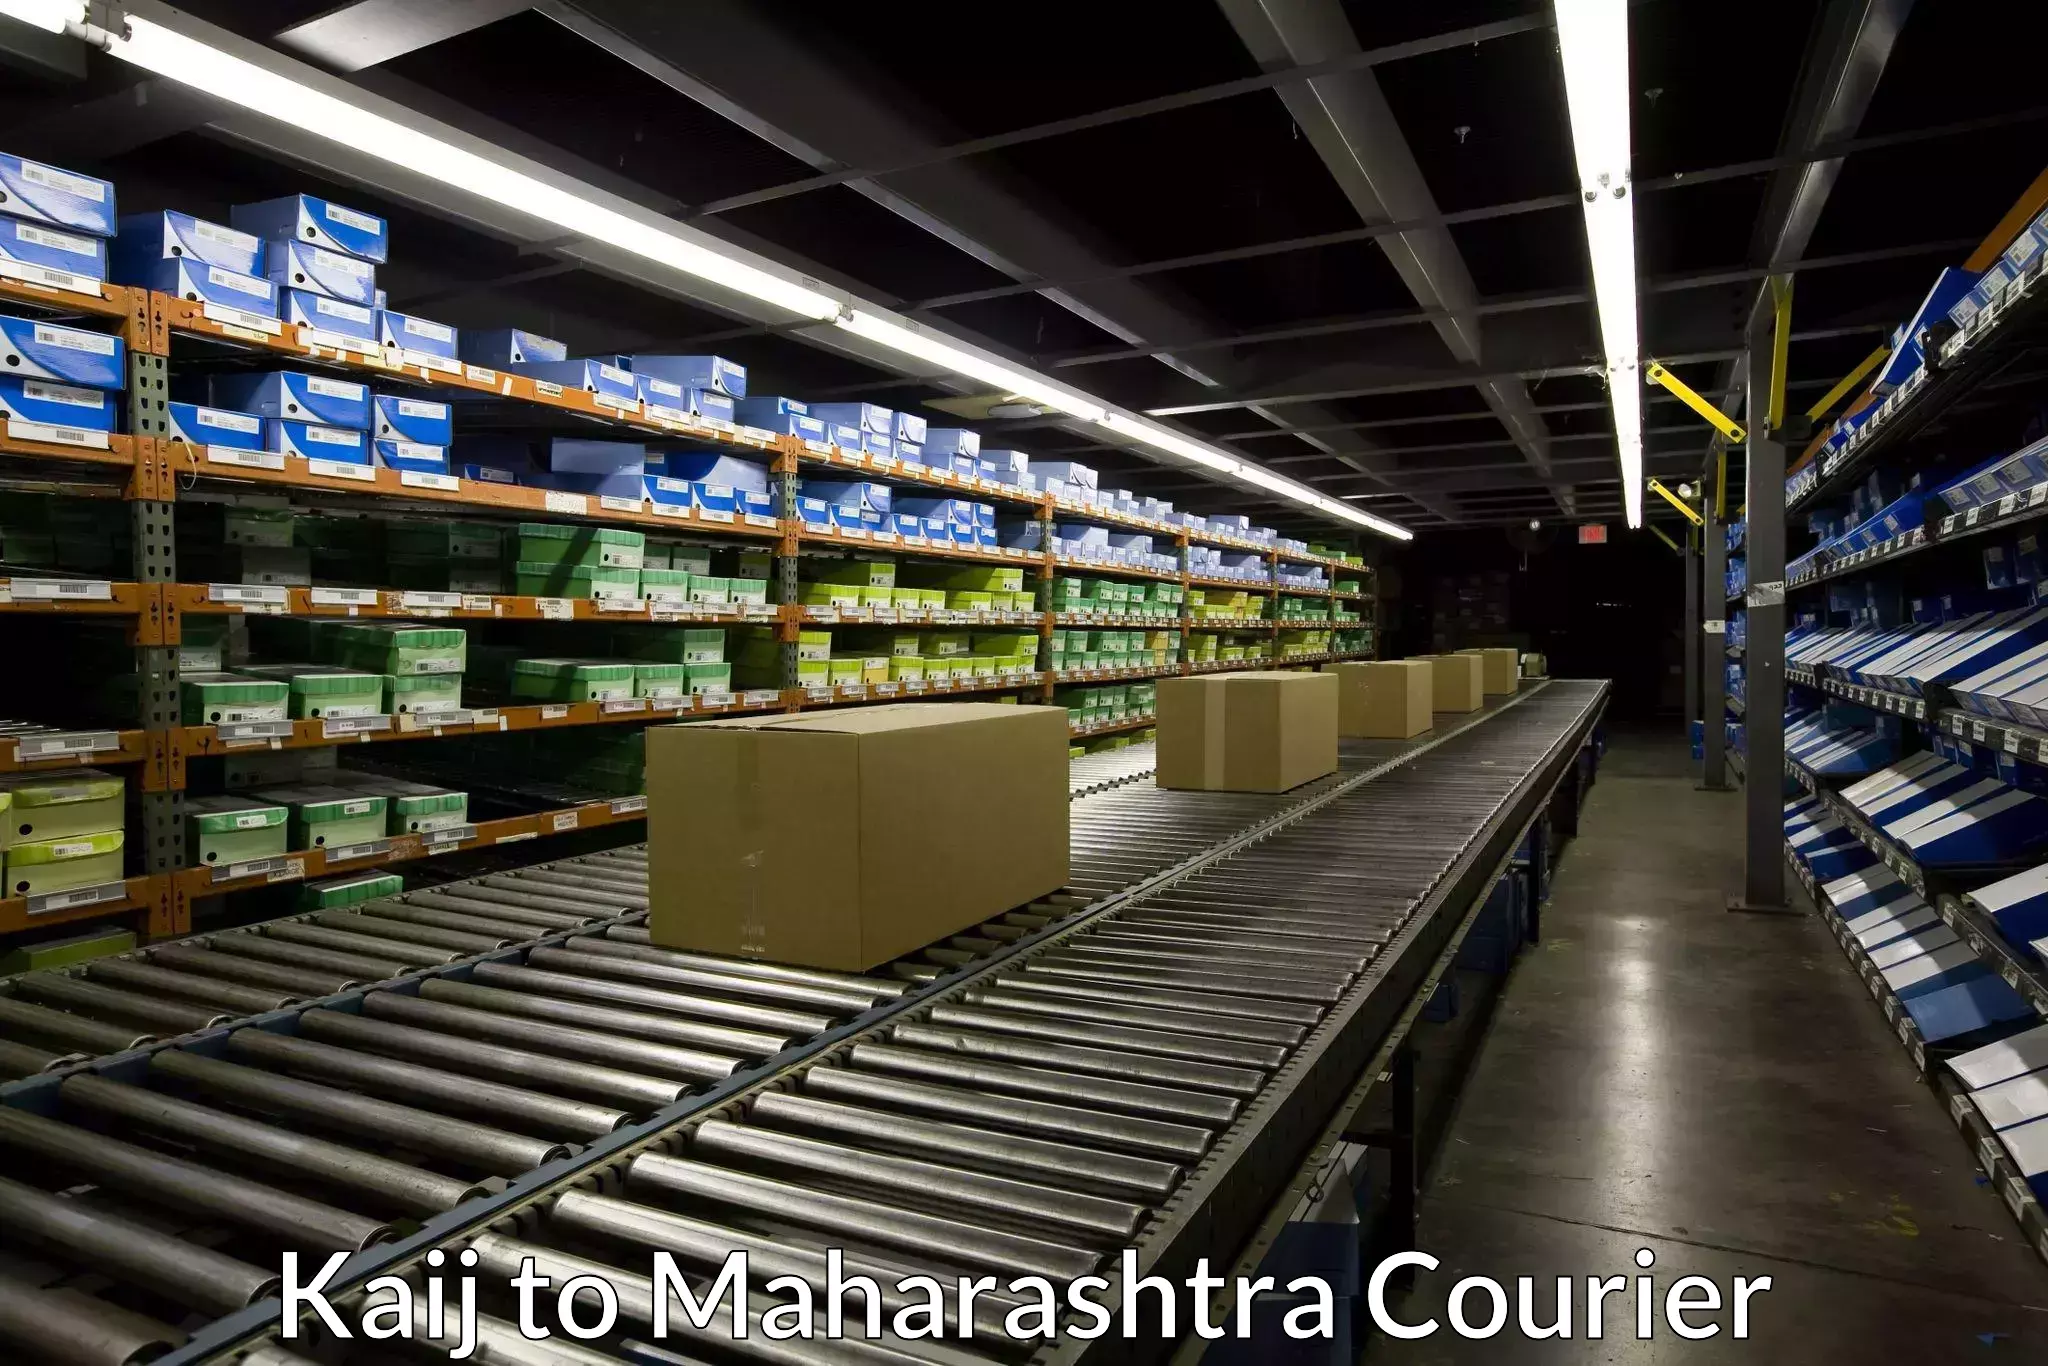 Customer-centric shipping Kaij to Maharashtra